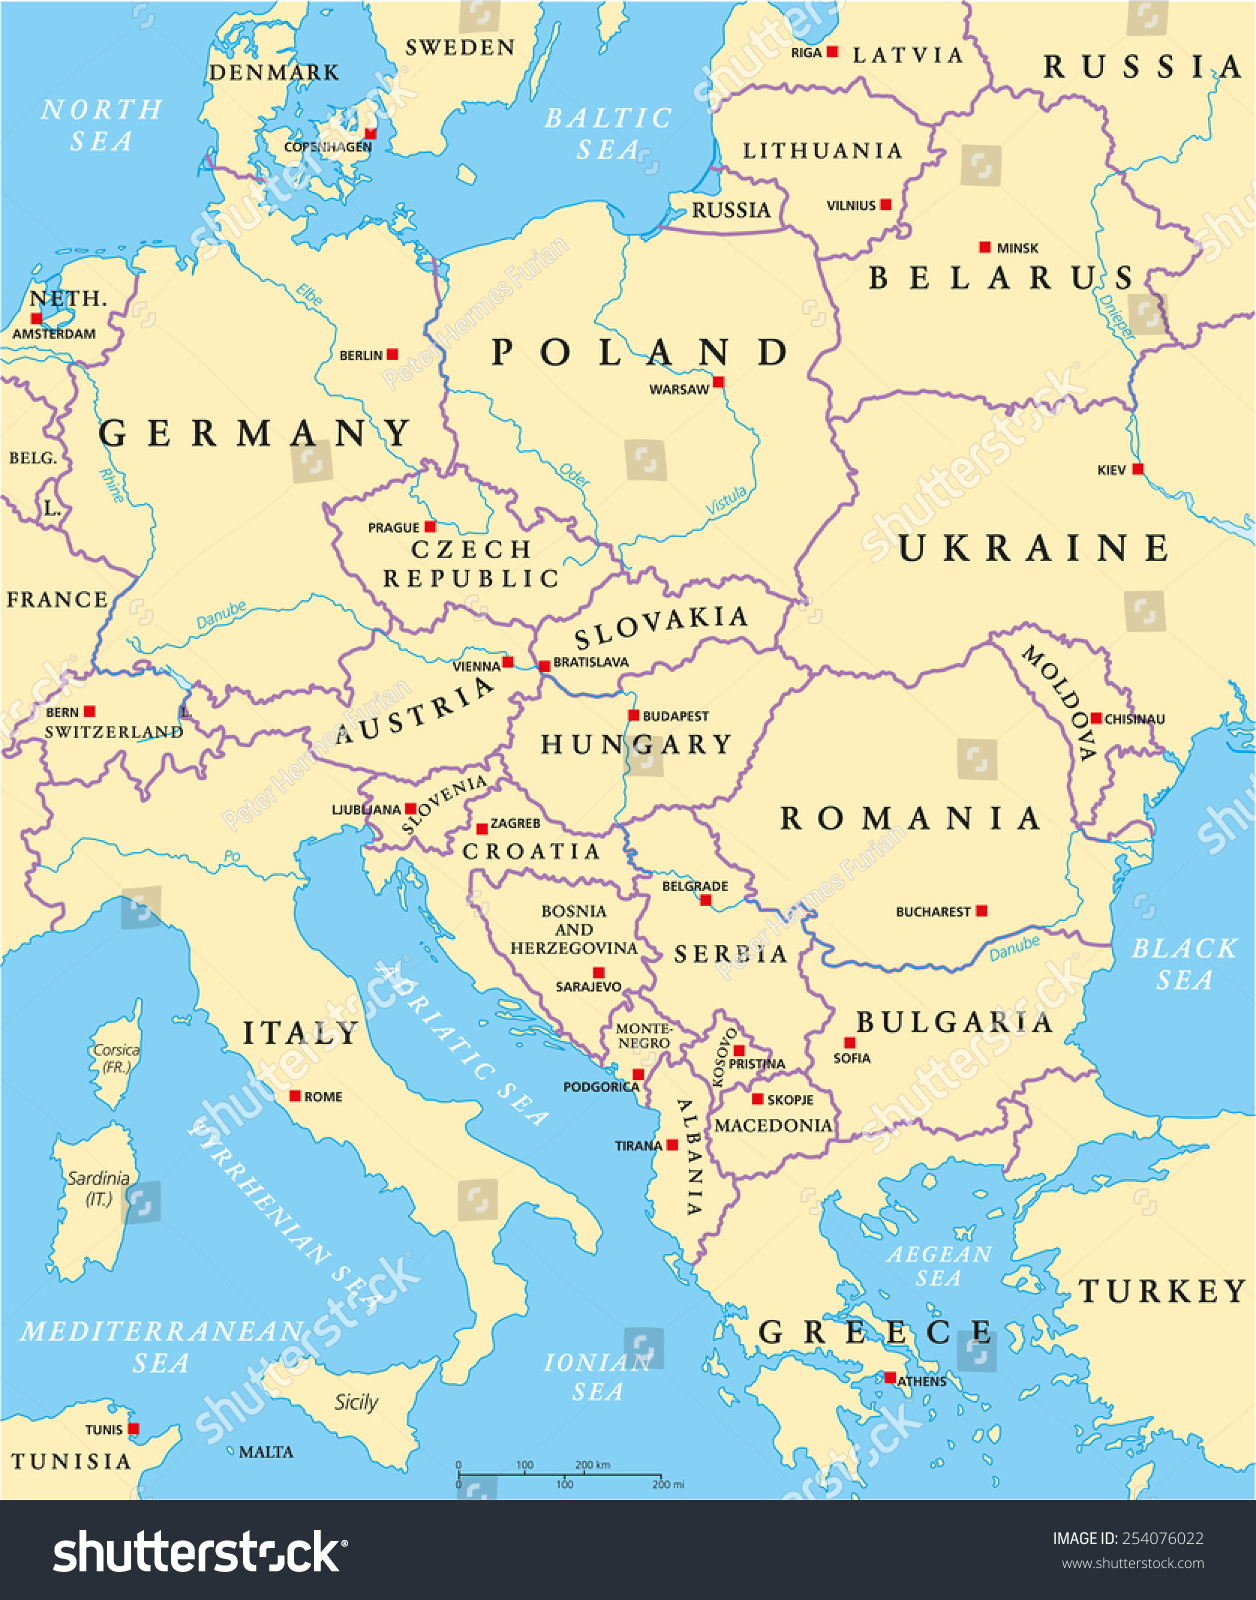 Image Vectorielle De Stock De Carte Politique De L'europe concernant Carte Capitale Europe